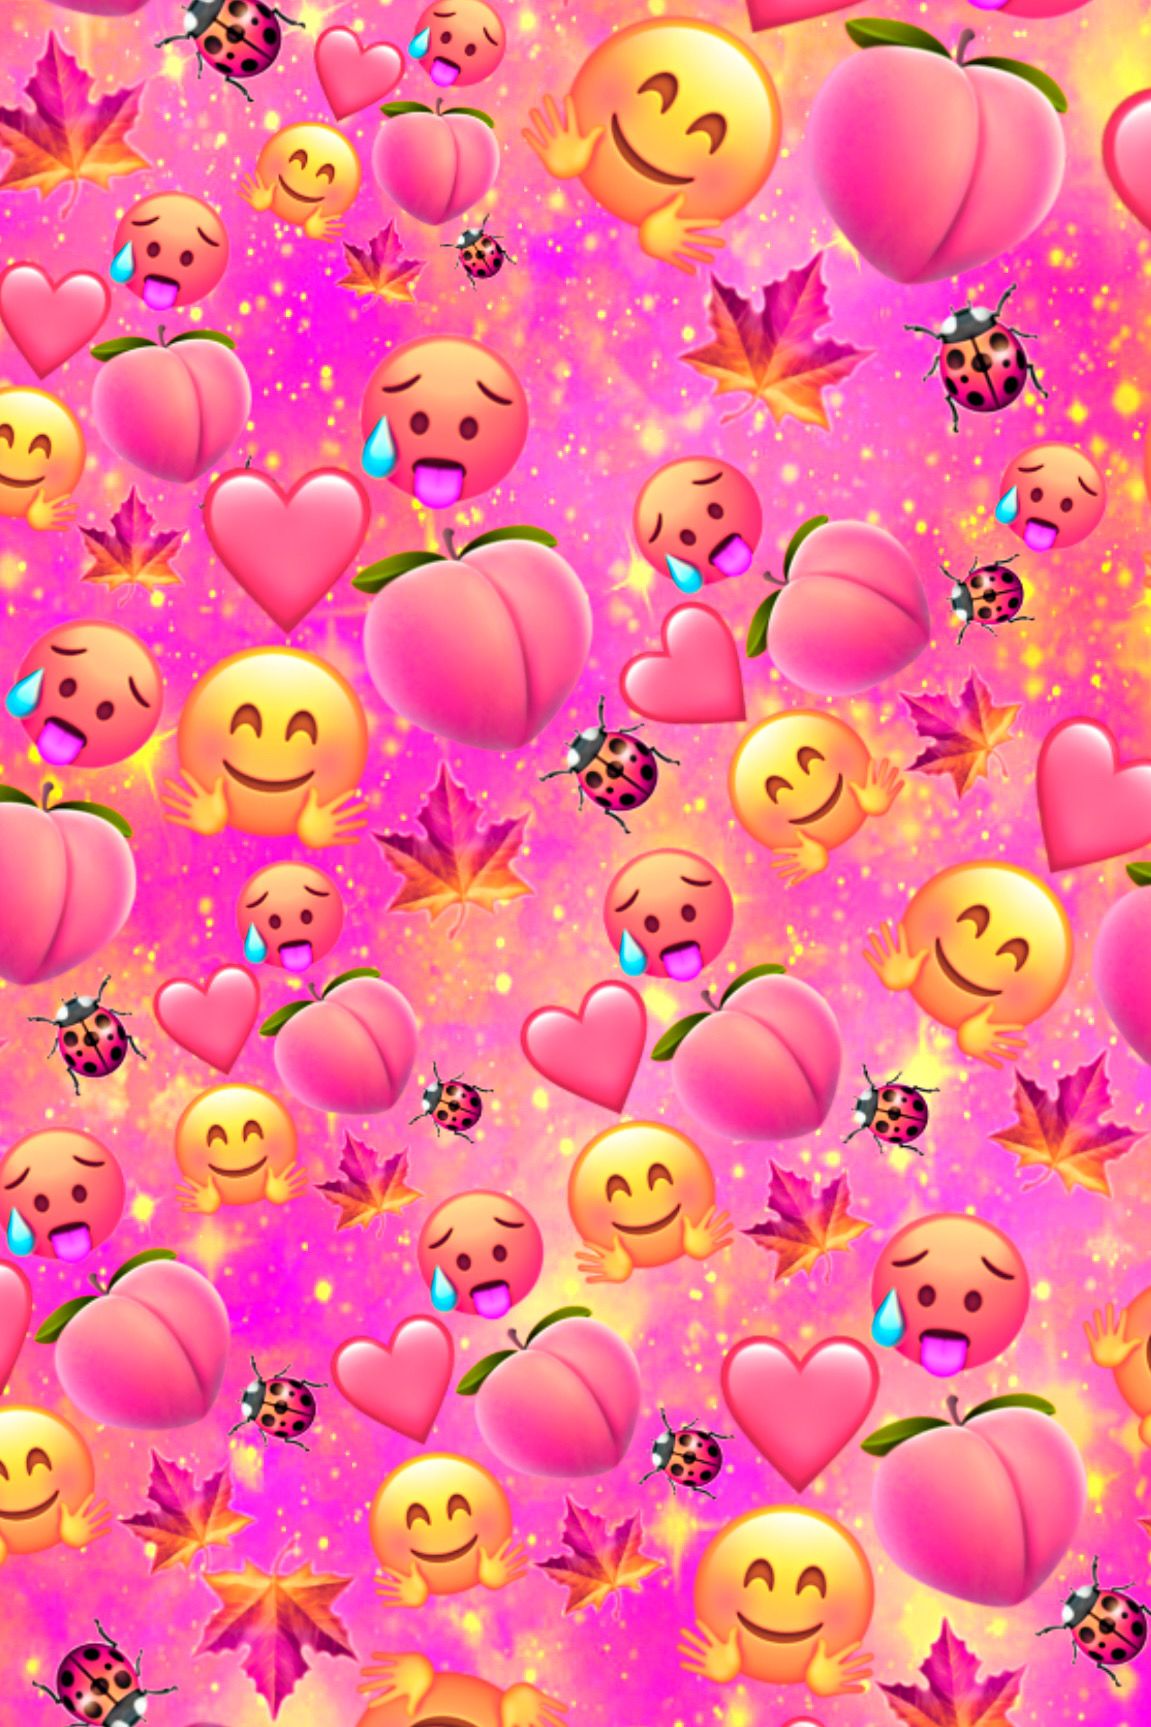 Peach Emoji Galaxy Wallpaper iPhone Cute